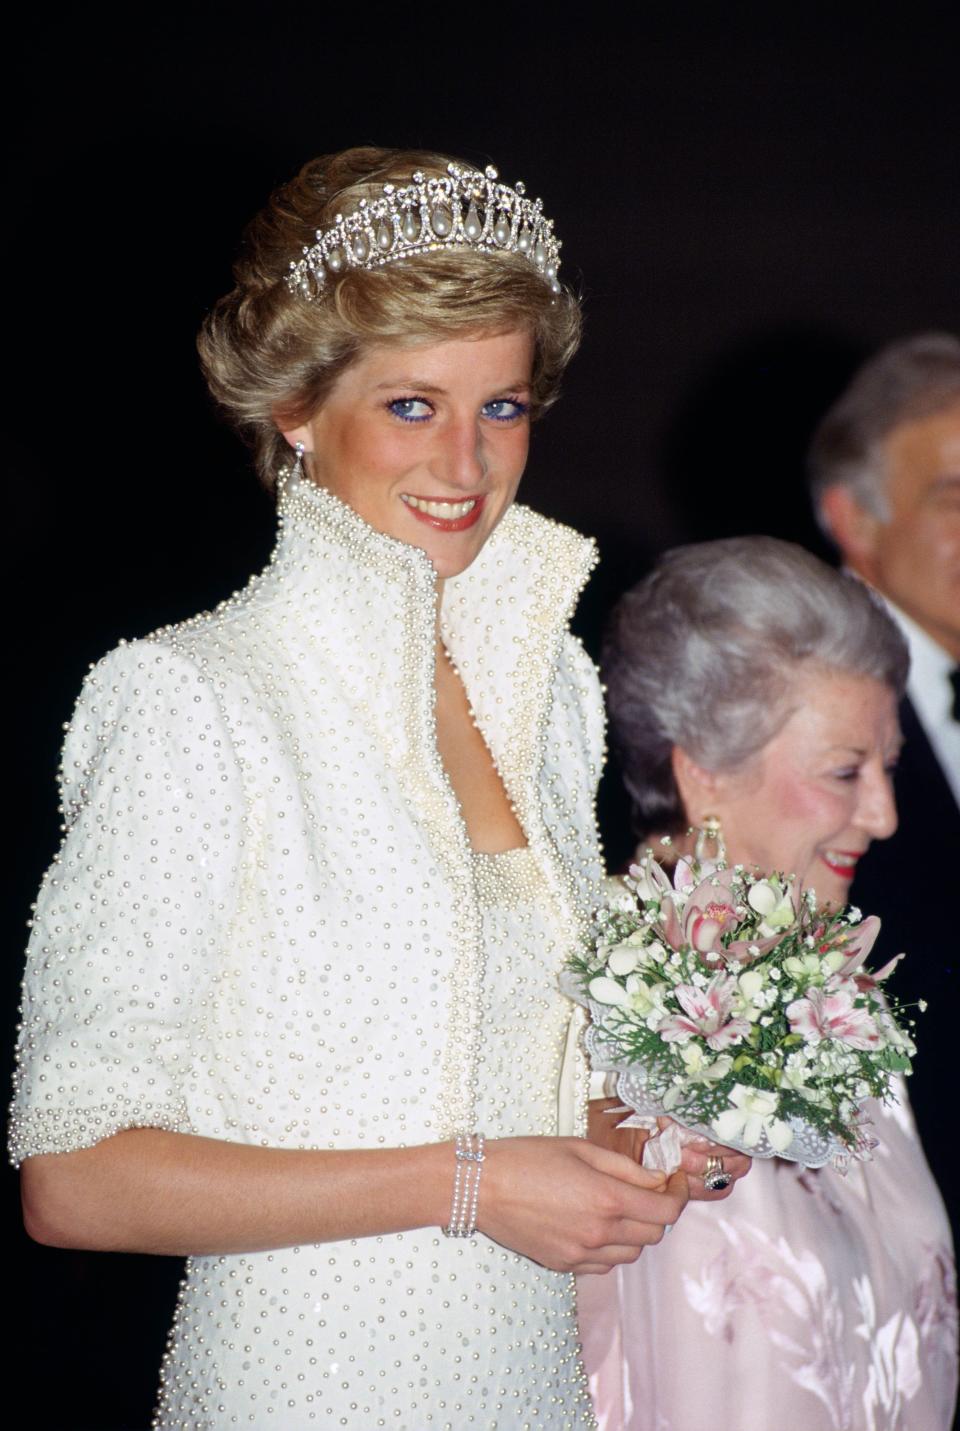 Princess Diana wearing her “Elvis” dress in Hong Kong in 1989